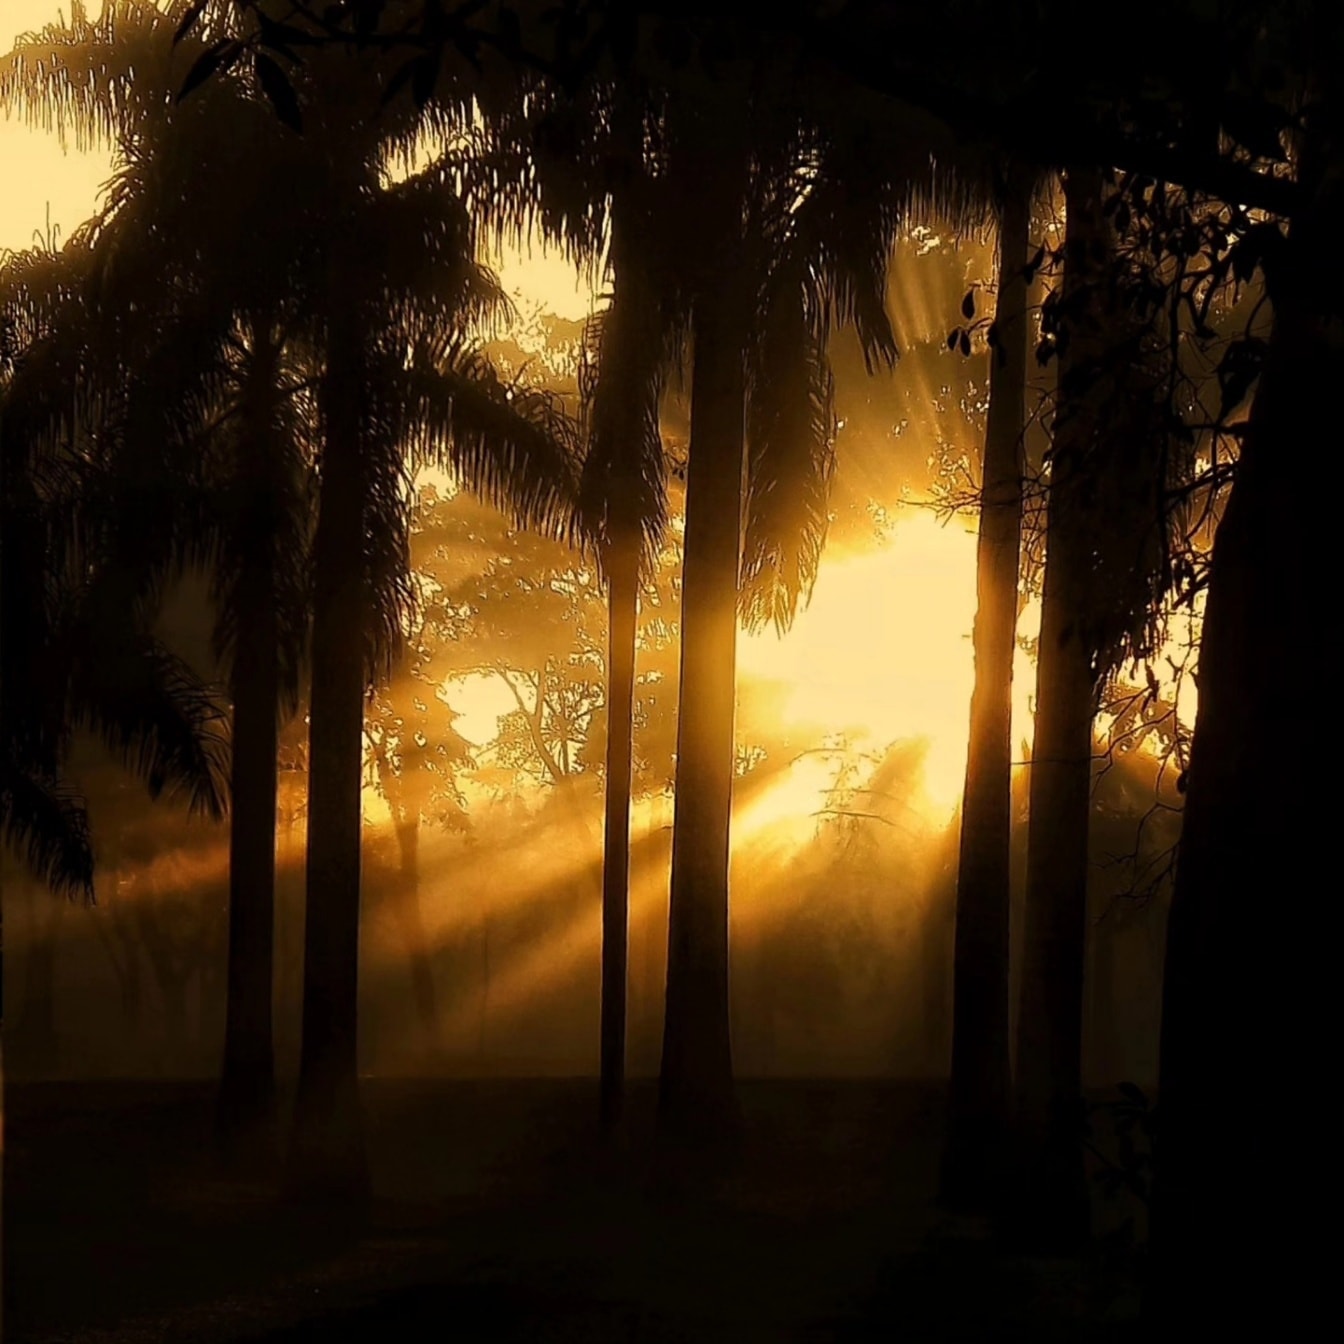 Γραφικό των φωτεινών ακτίνων του Ήλιου σε ένα σκοτεινό δάσος με μια σιλουέτα δέντρων στη σκιά